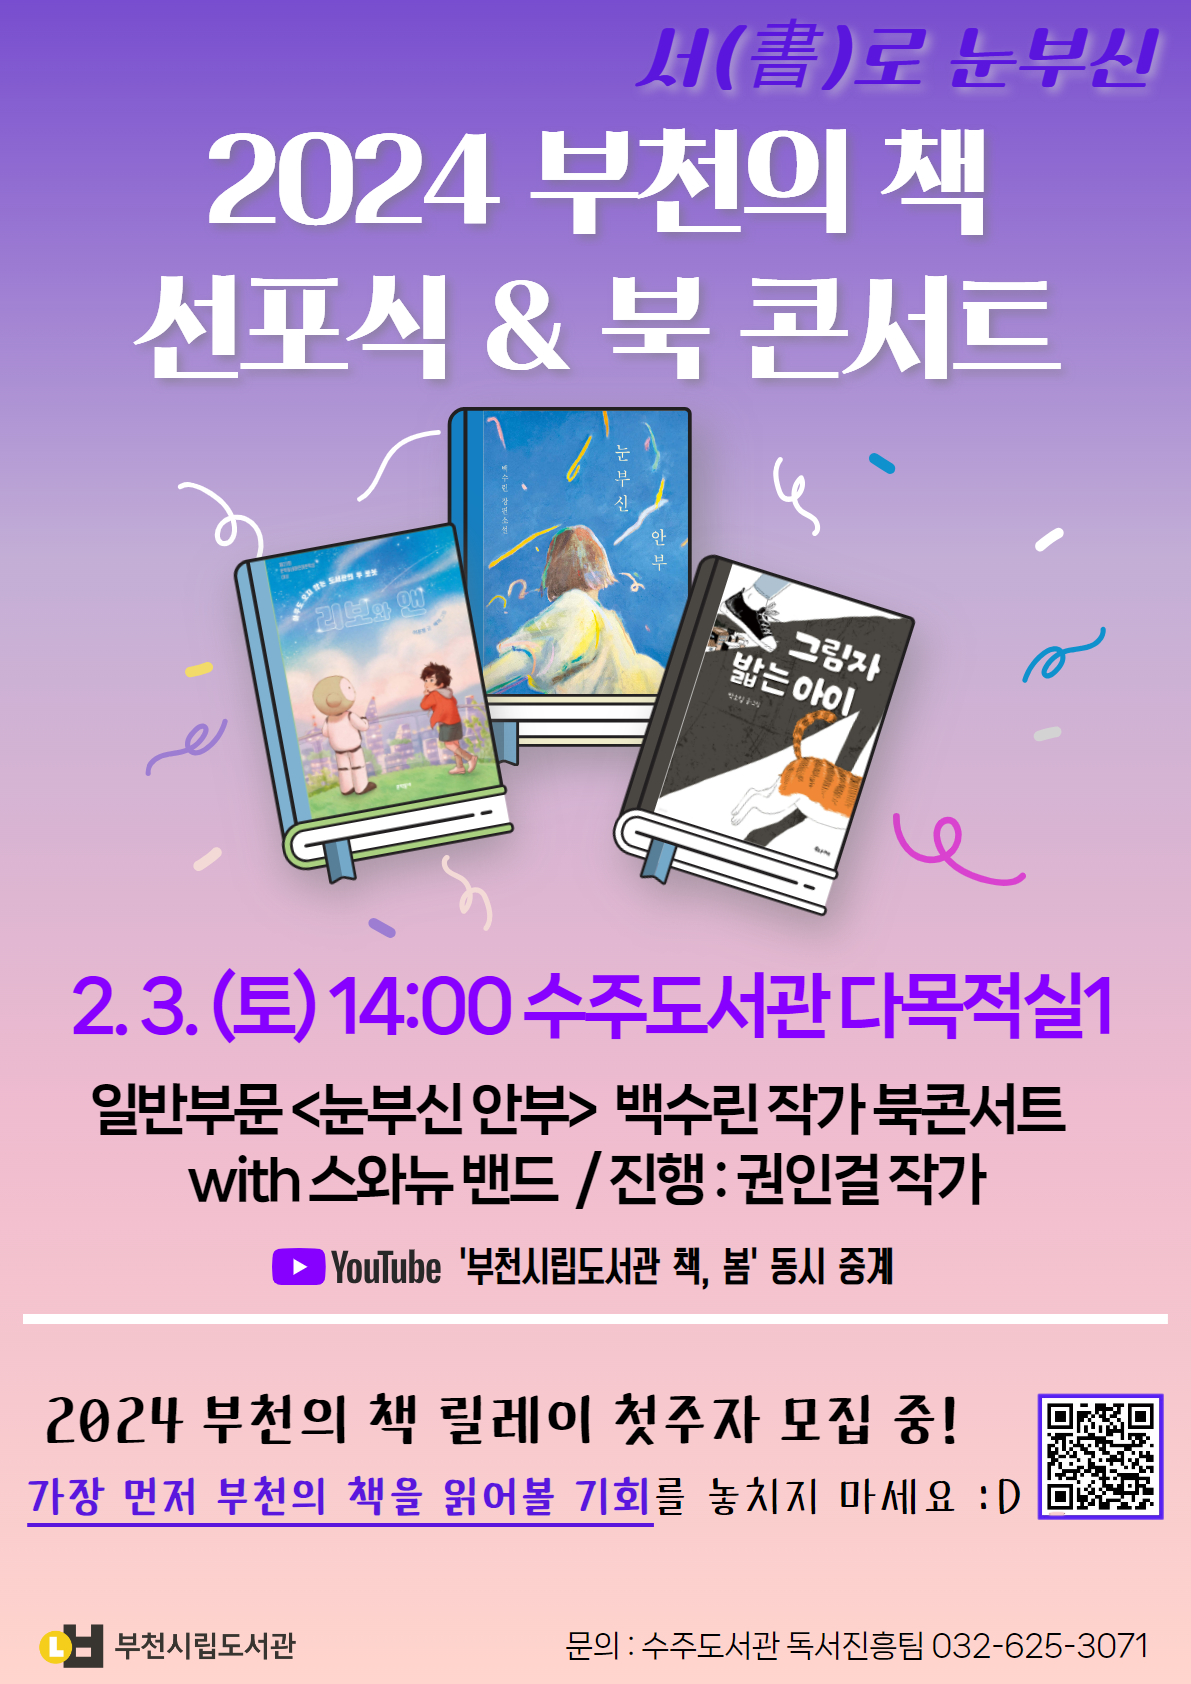 2024 부천의 책 선포식·북 콘서트 2월 3일 개최